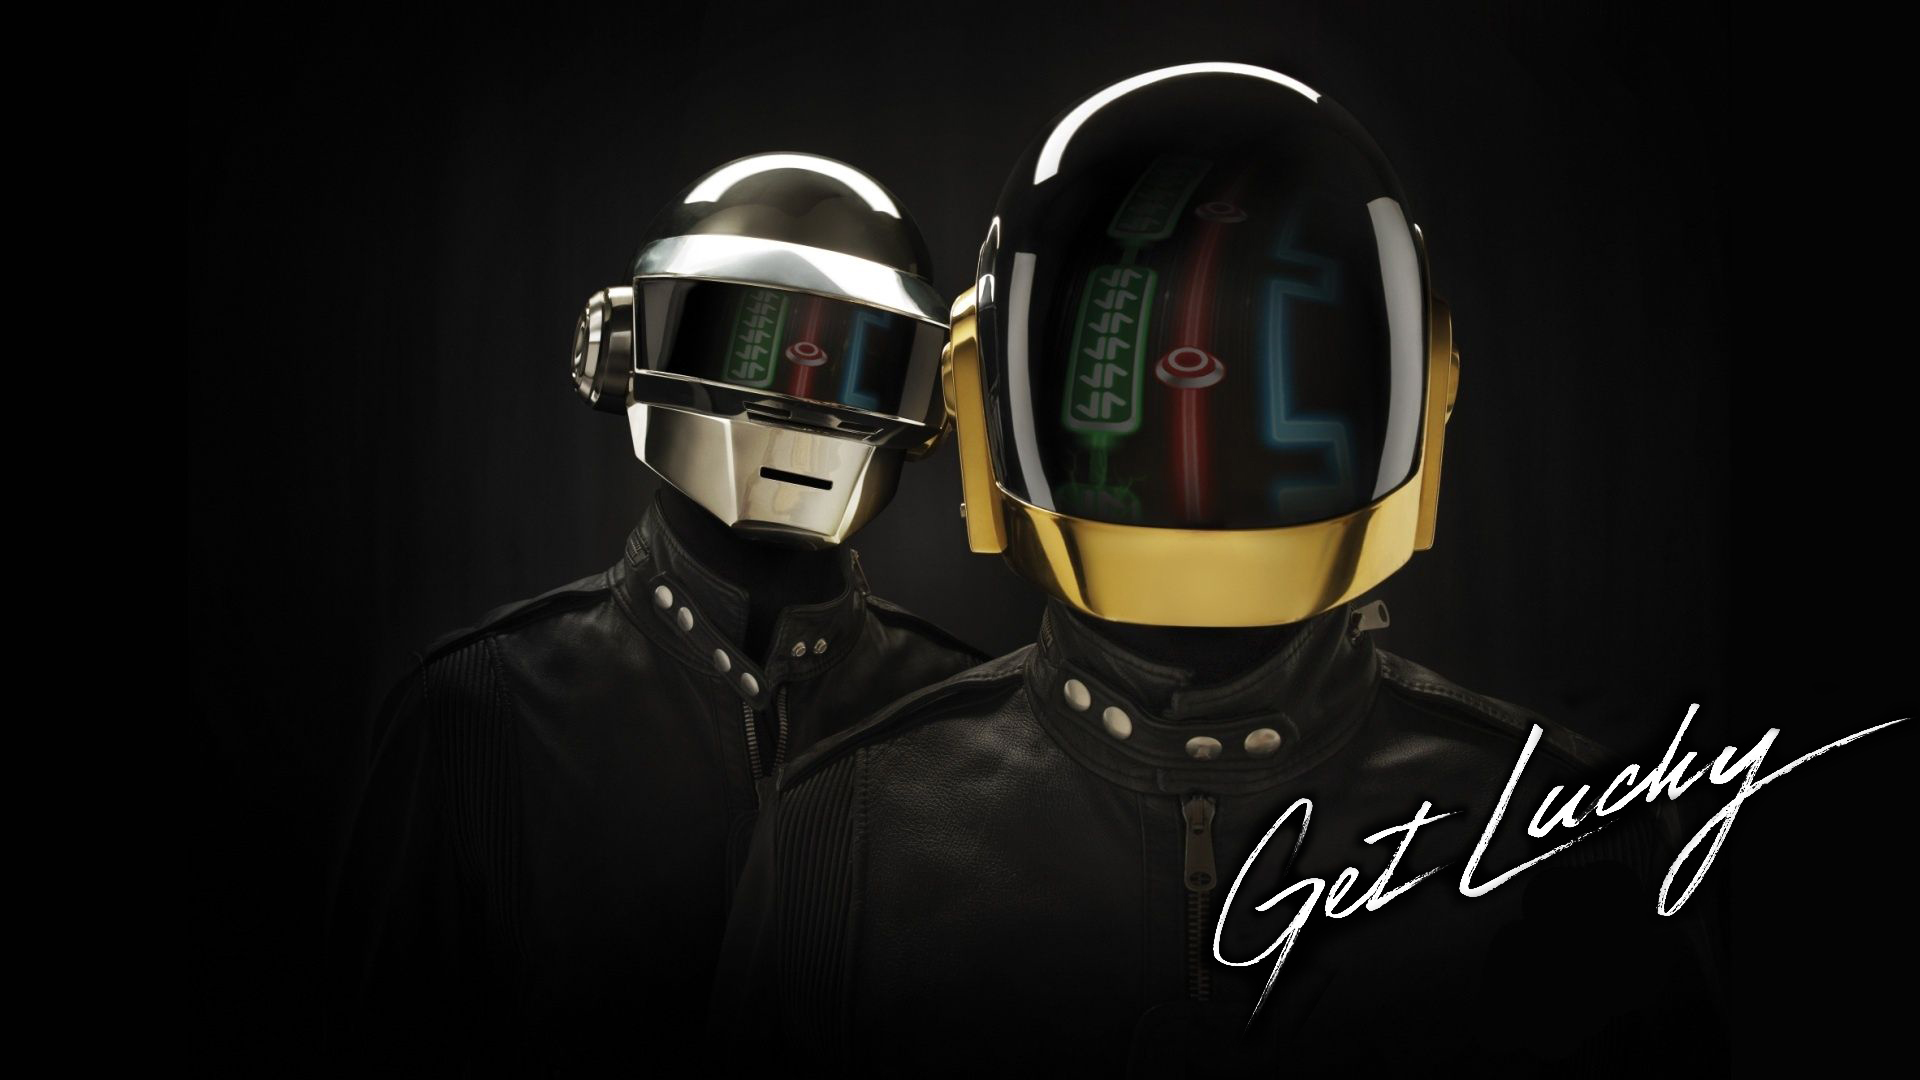 ¿Que esconde Daft Punk debajo de los cascos? (Foto reveladora)